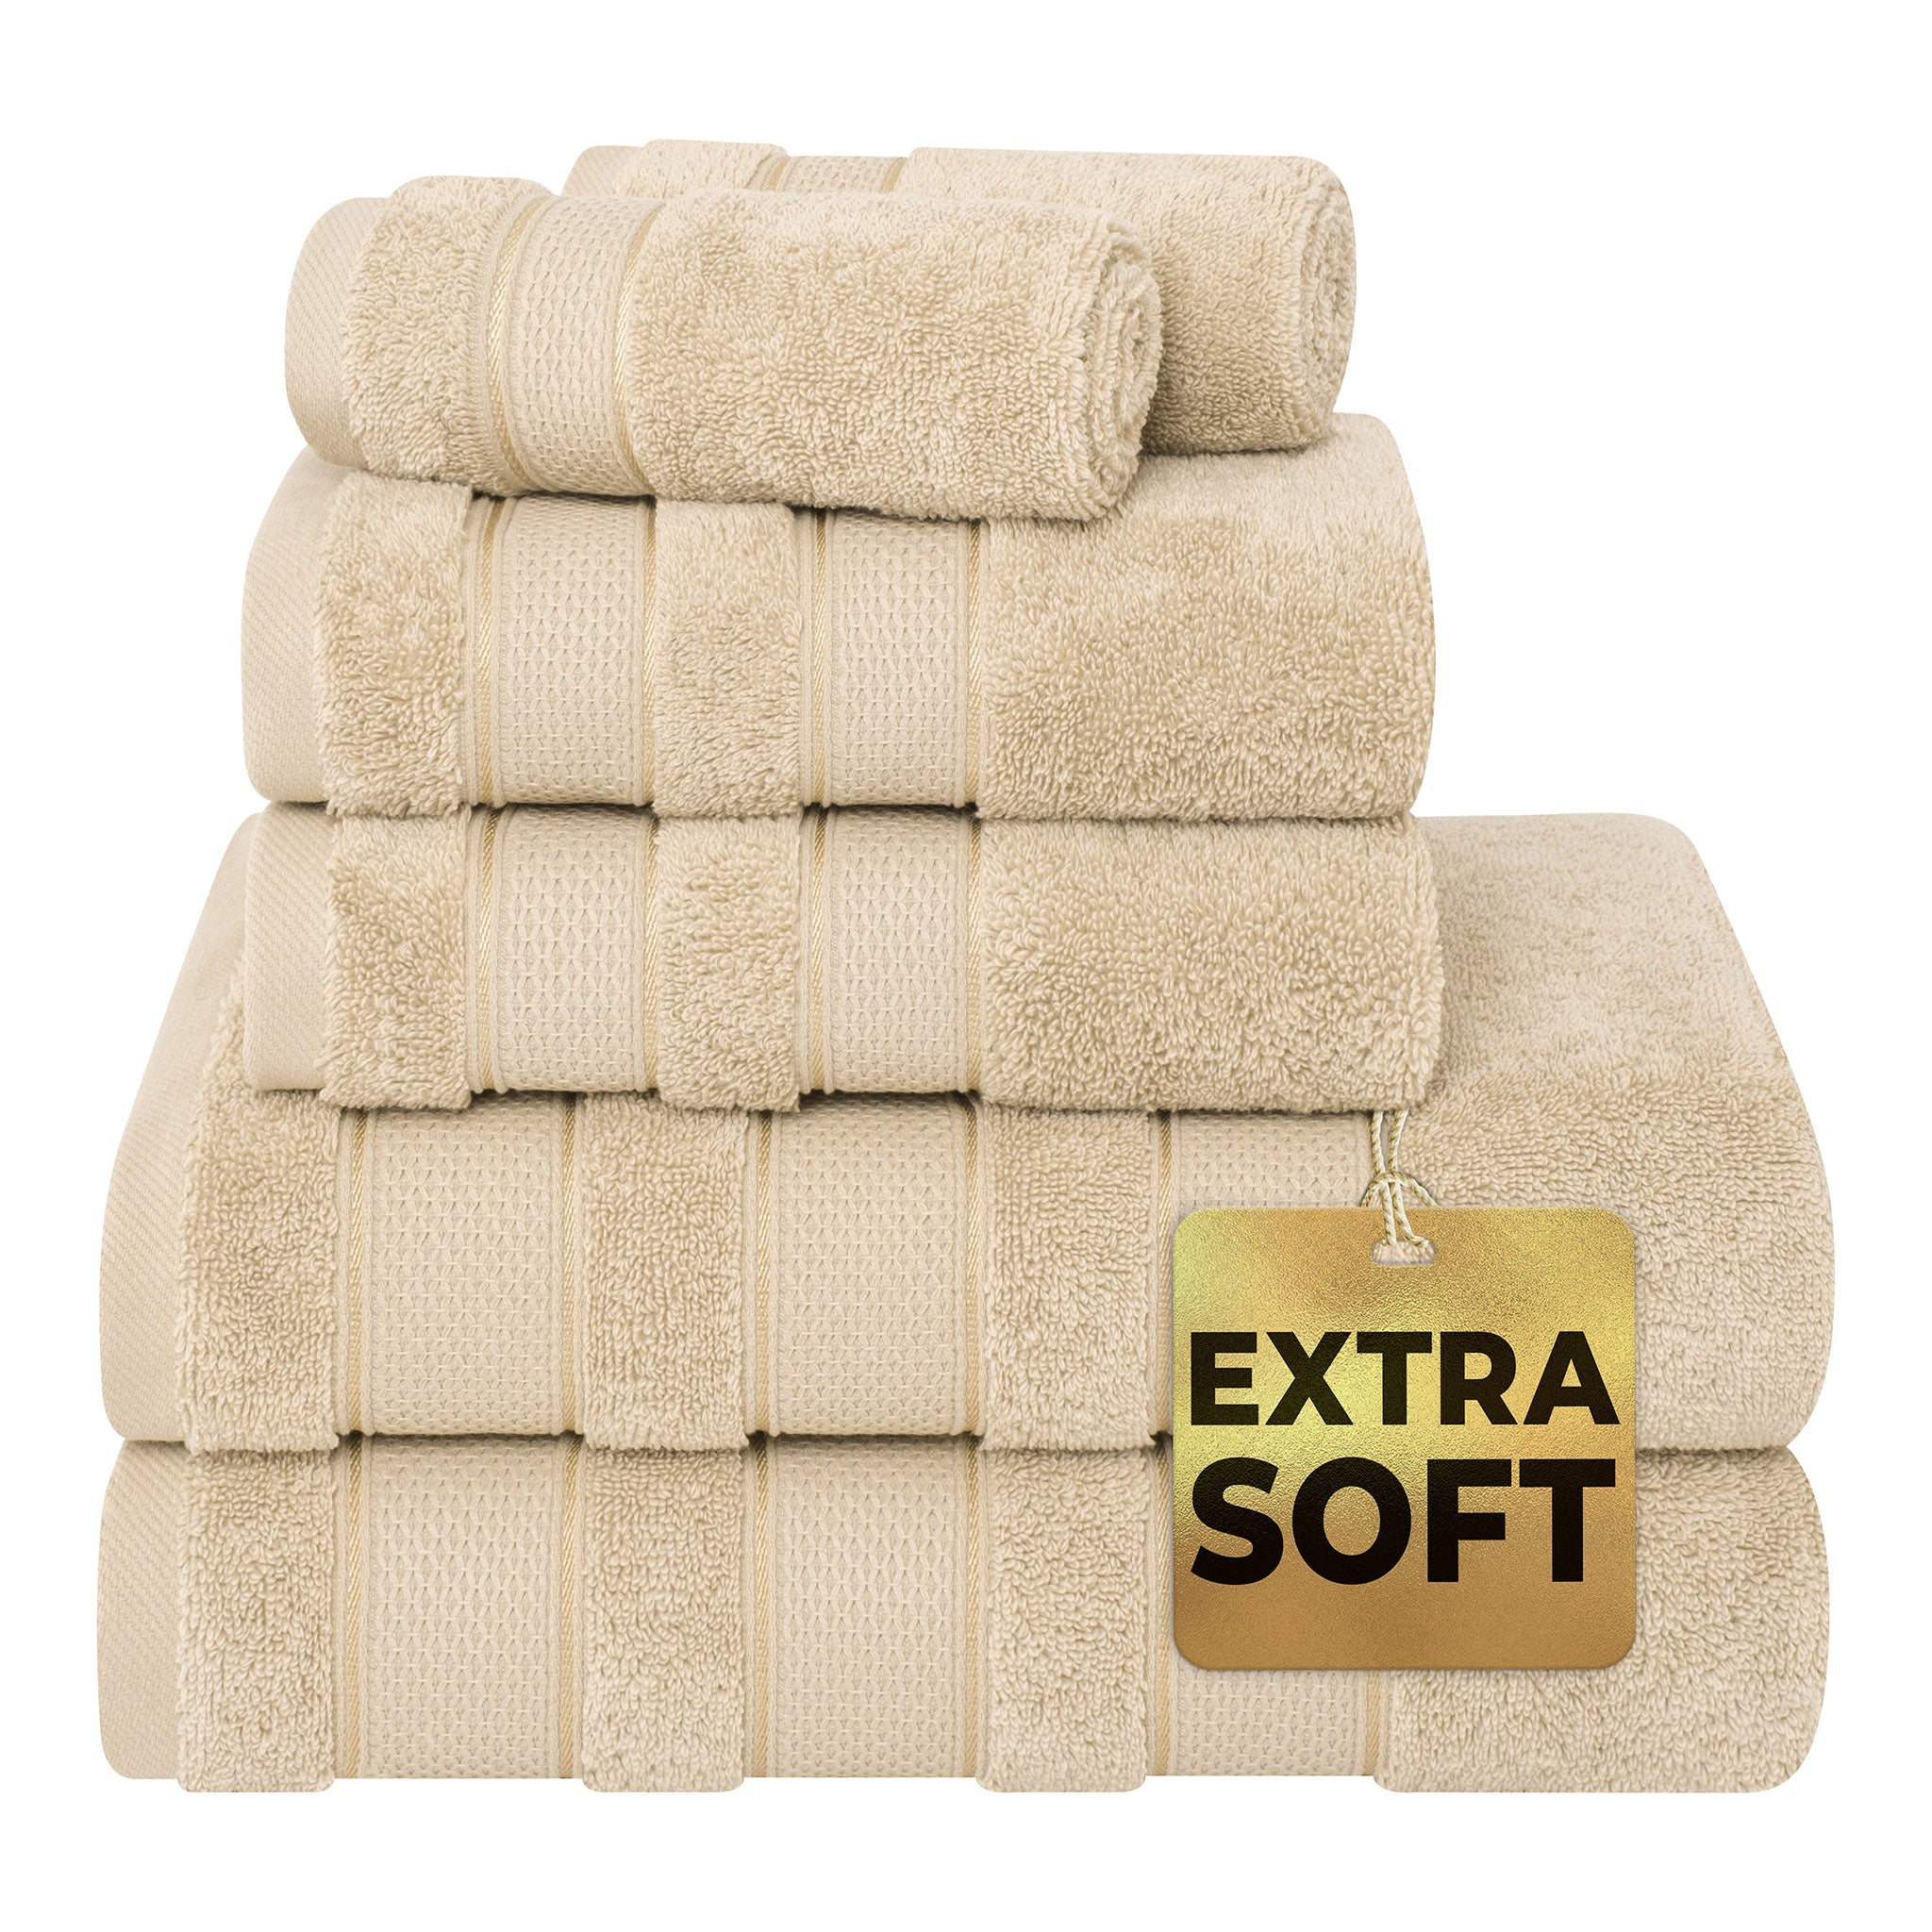  Market & Place 100% Cotton Super Soft Luxury Towel Set